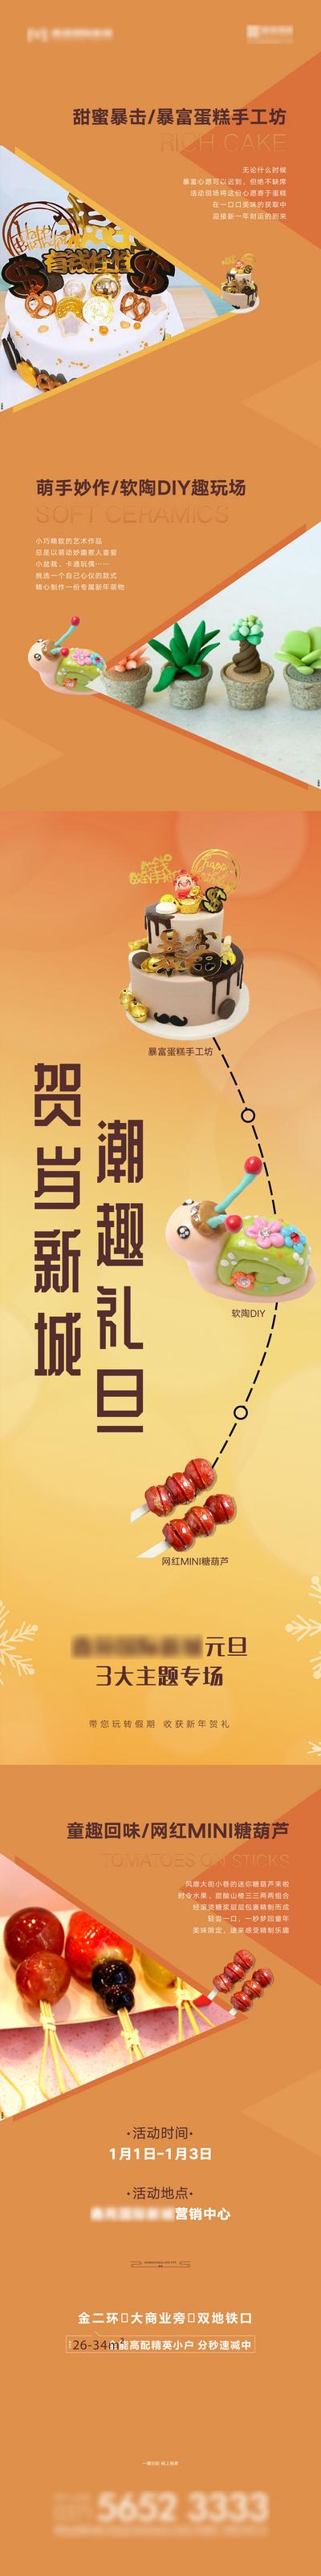 南门网 海报 长图 房地产 公历节日 元旦 DIY 蛋糕 软陶 糖葫芦